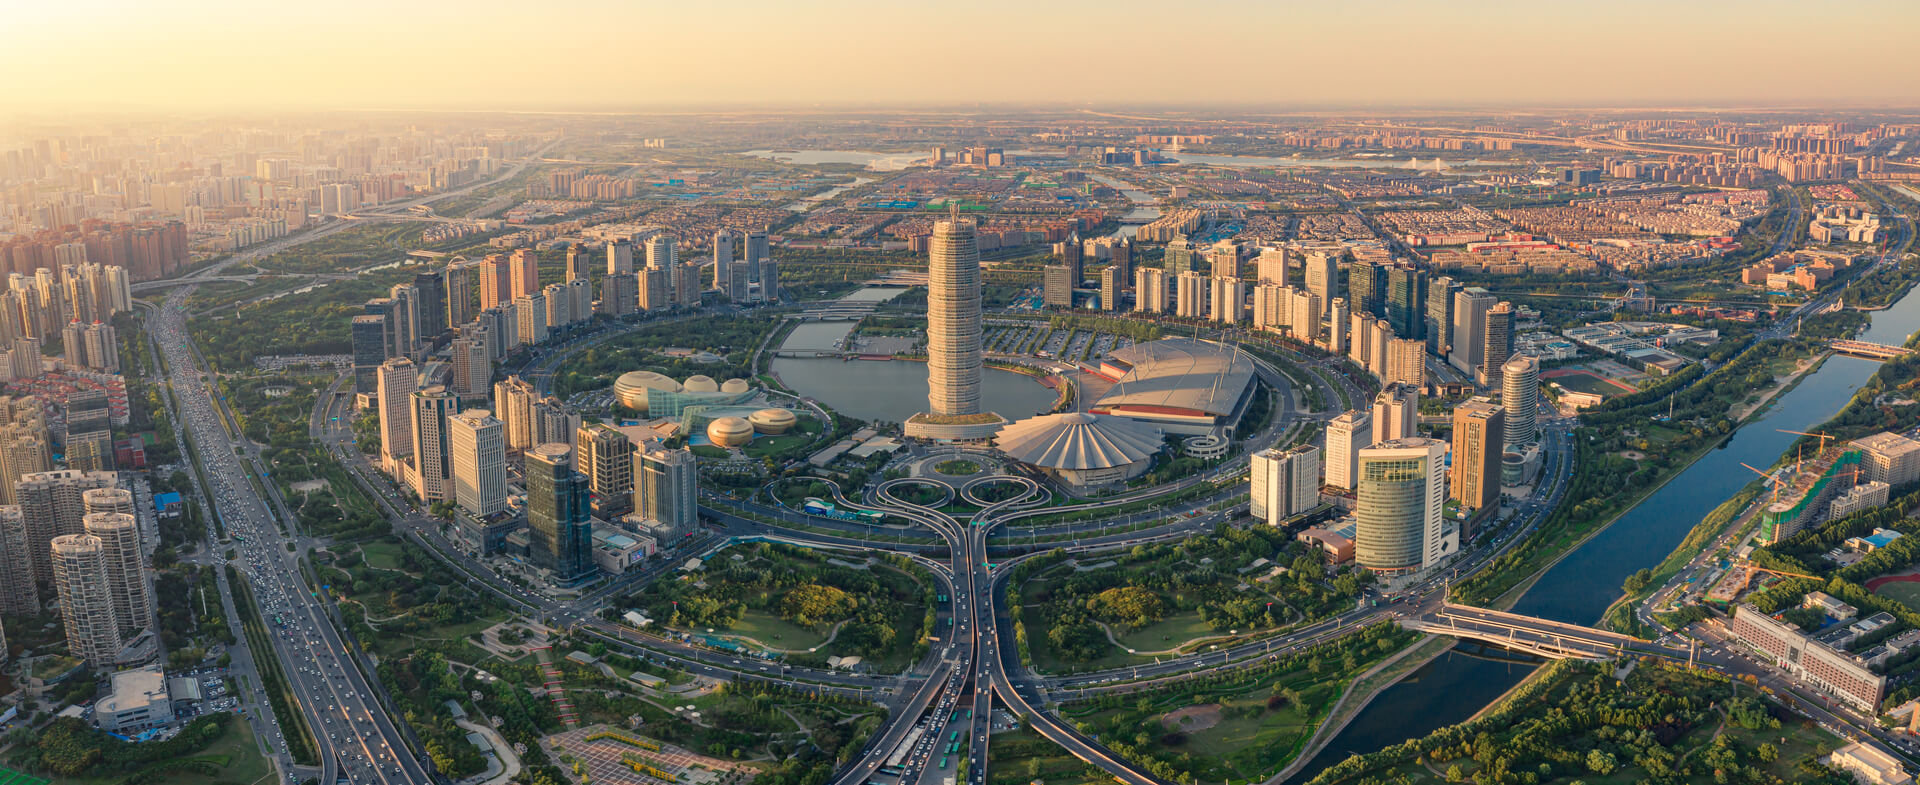 Photographie aérienne du quartier des affaires de Zhengzhou en Chine